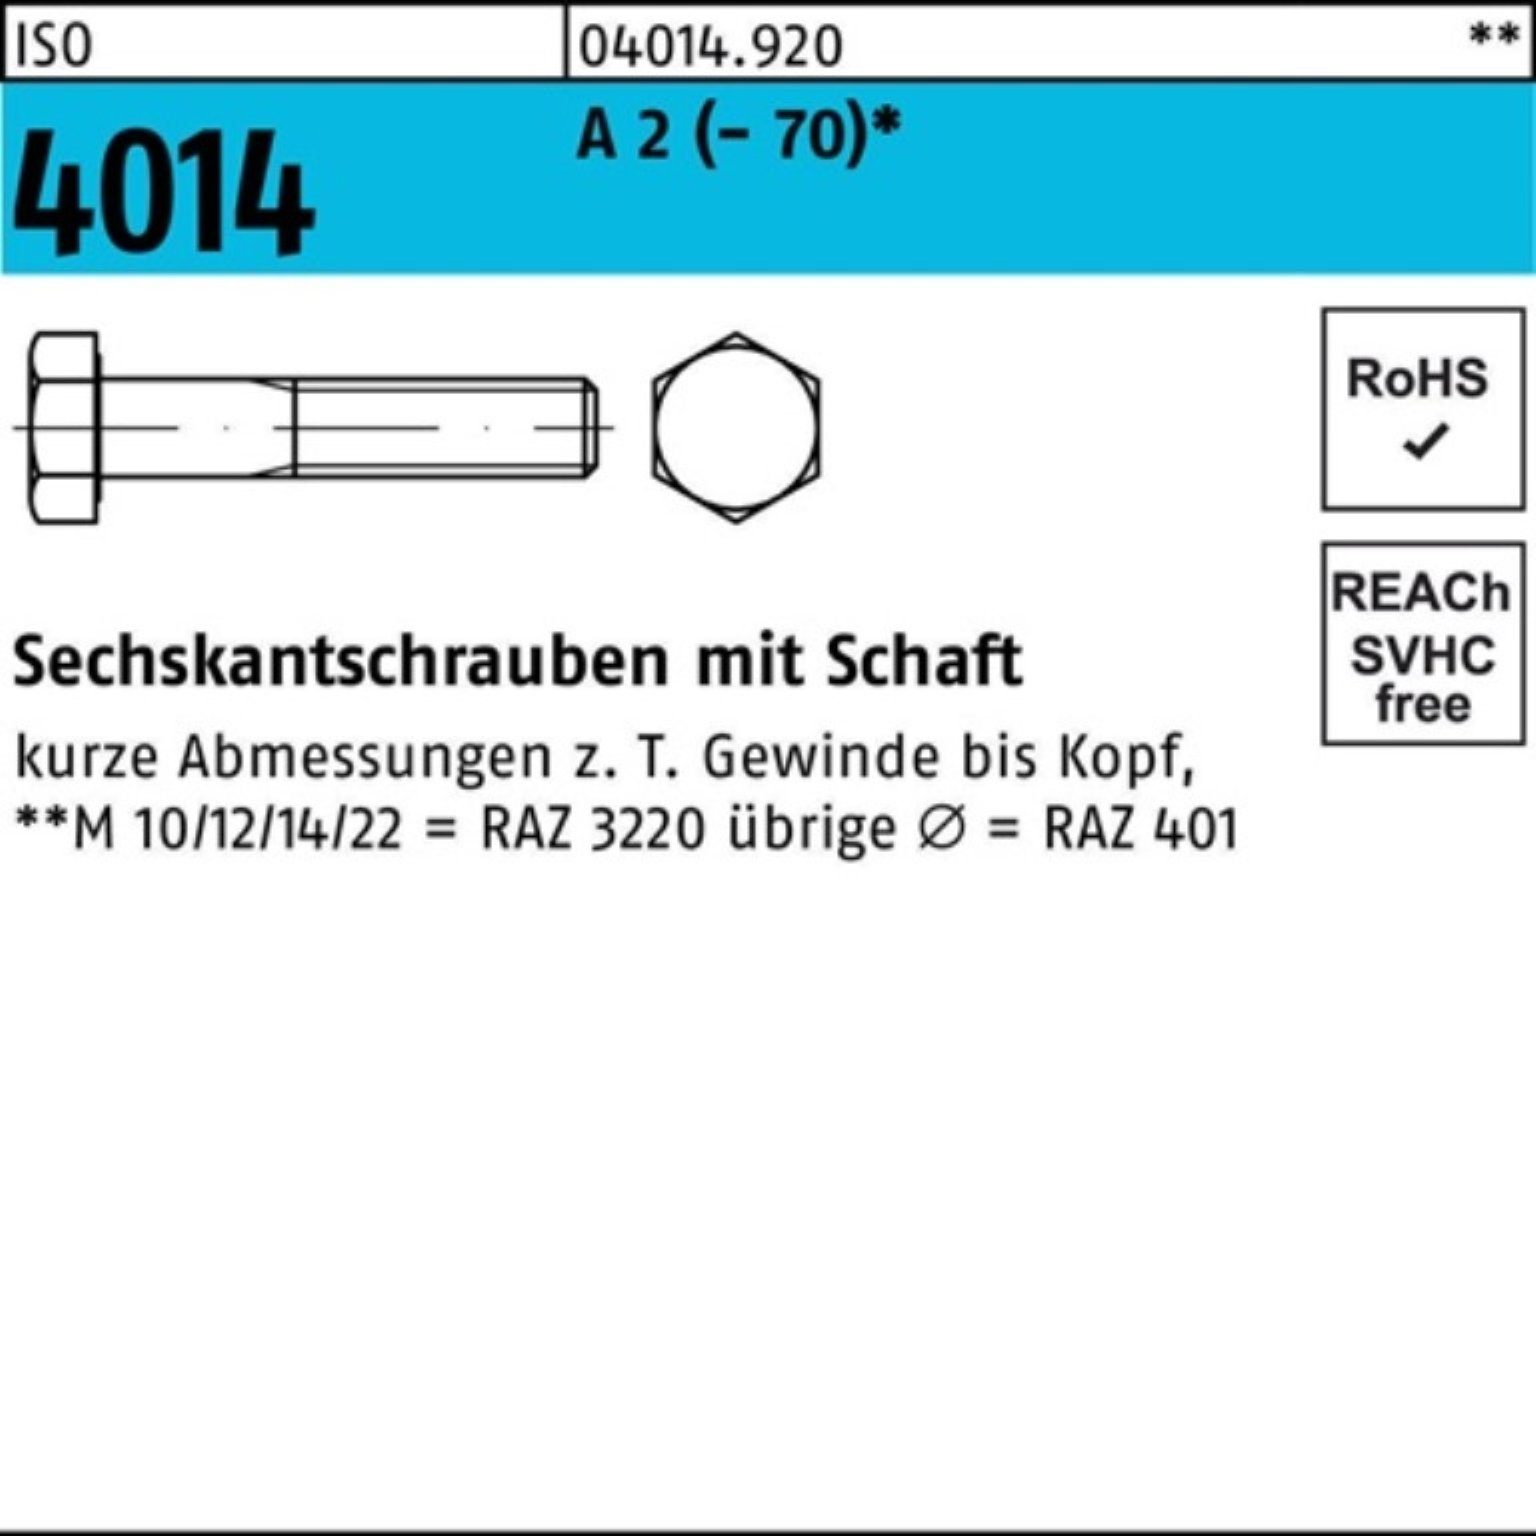 Bufab Sechskantschraube 100er Pack Sechskantschraube ISO 4014 Schaft M27x 150 A 2 (70) 1 St